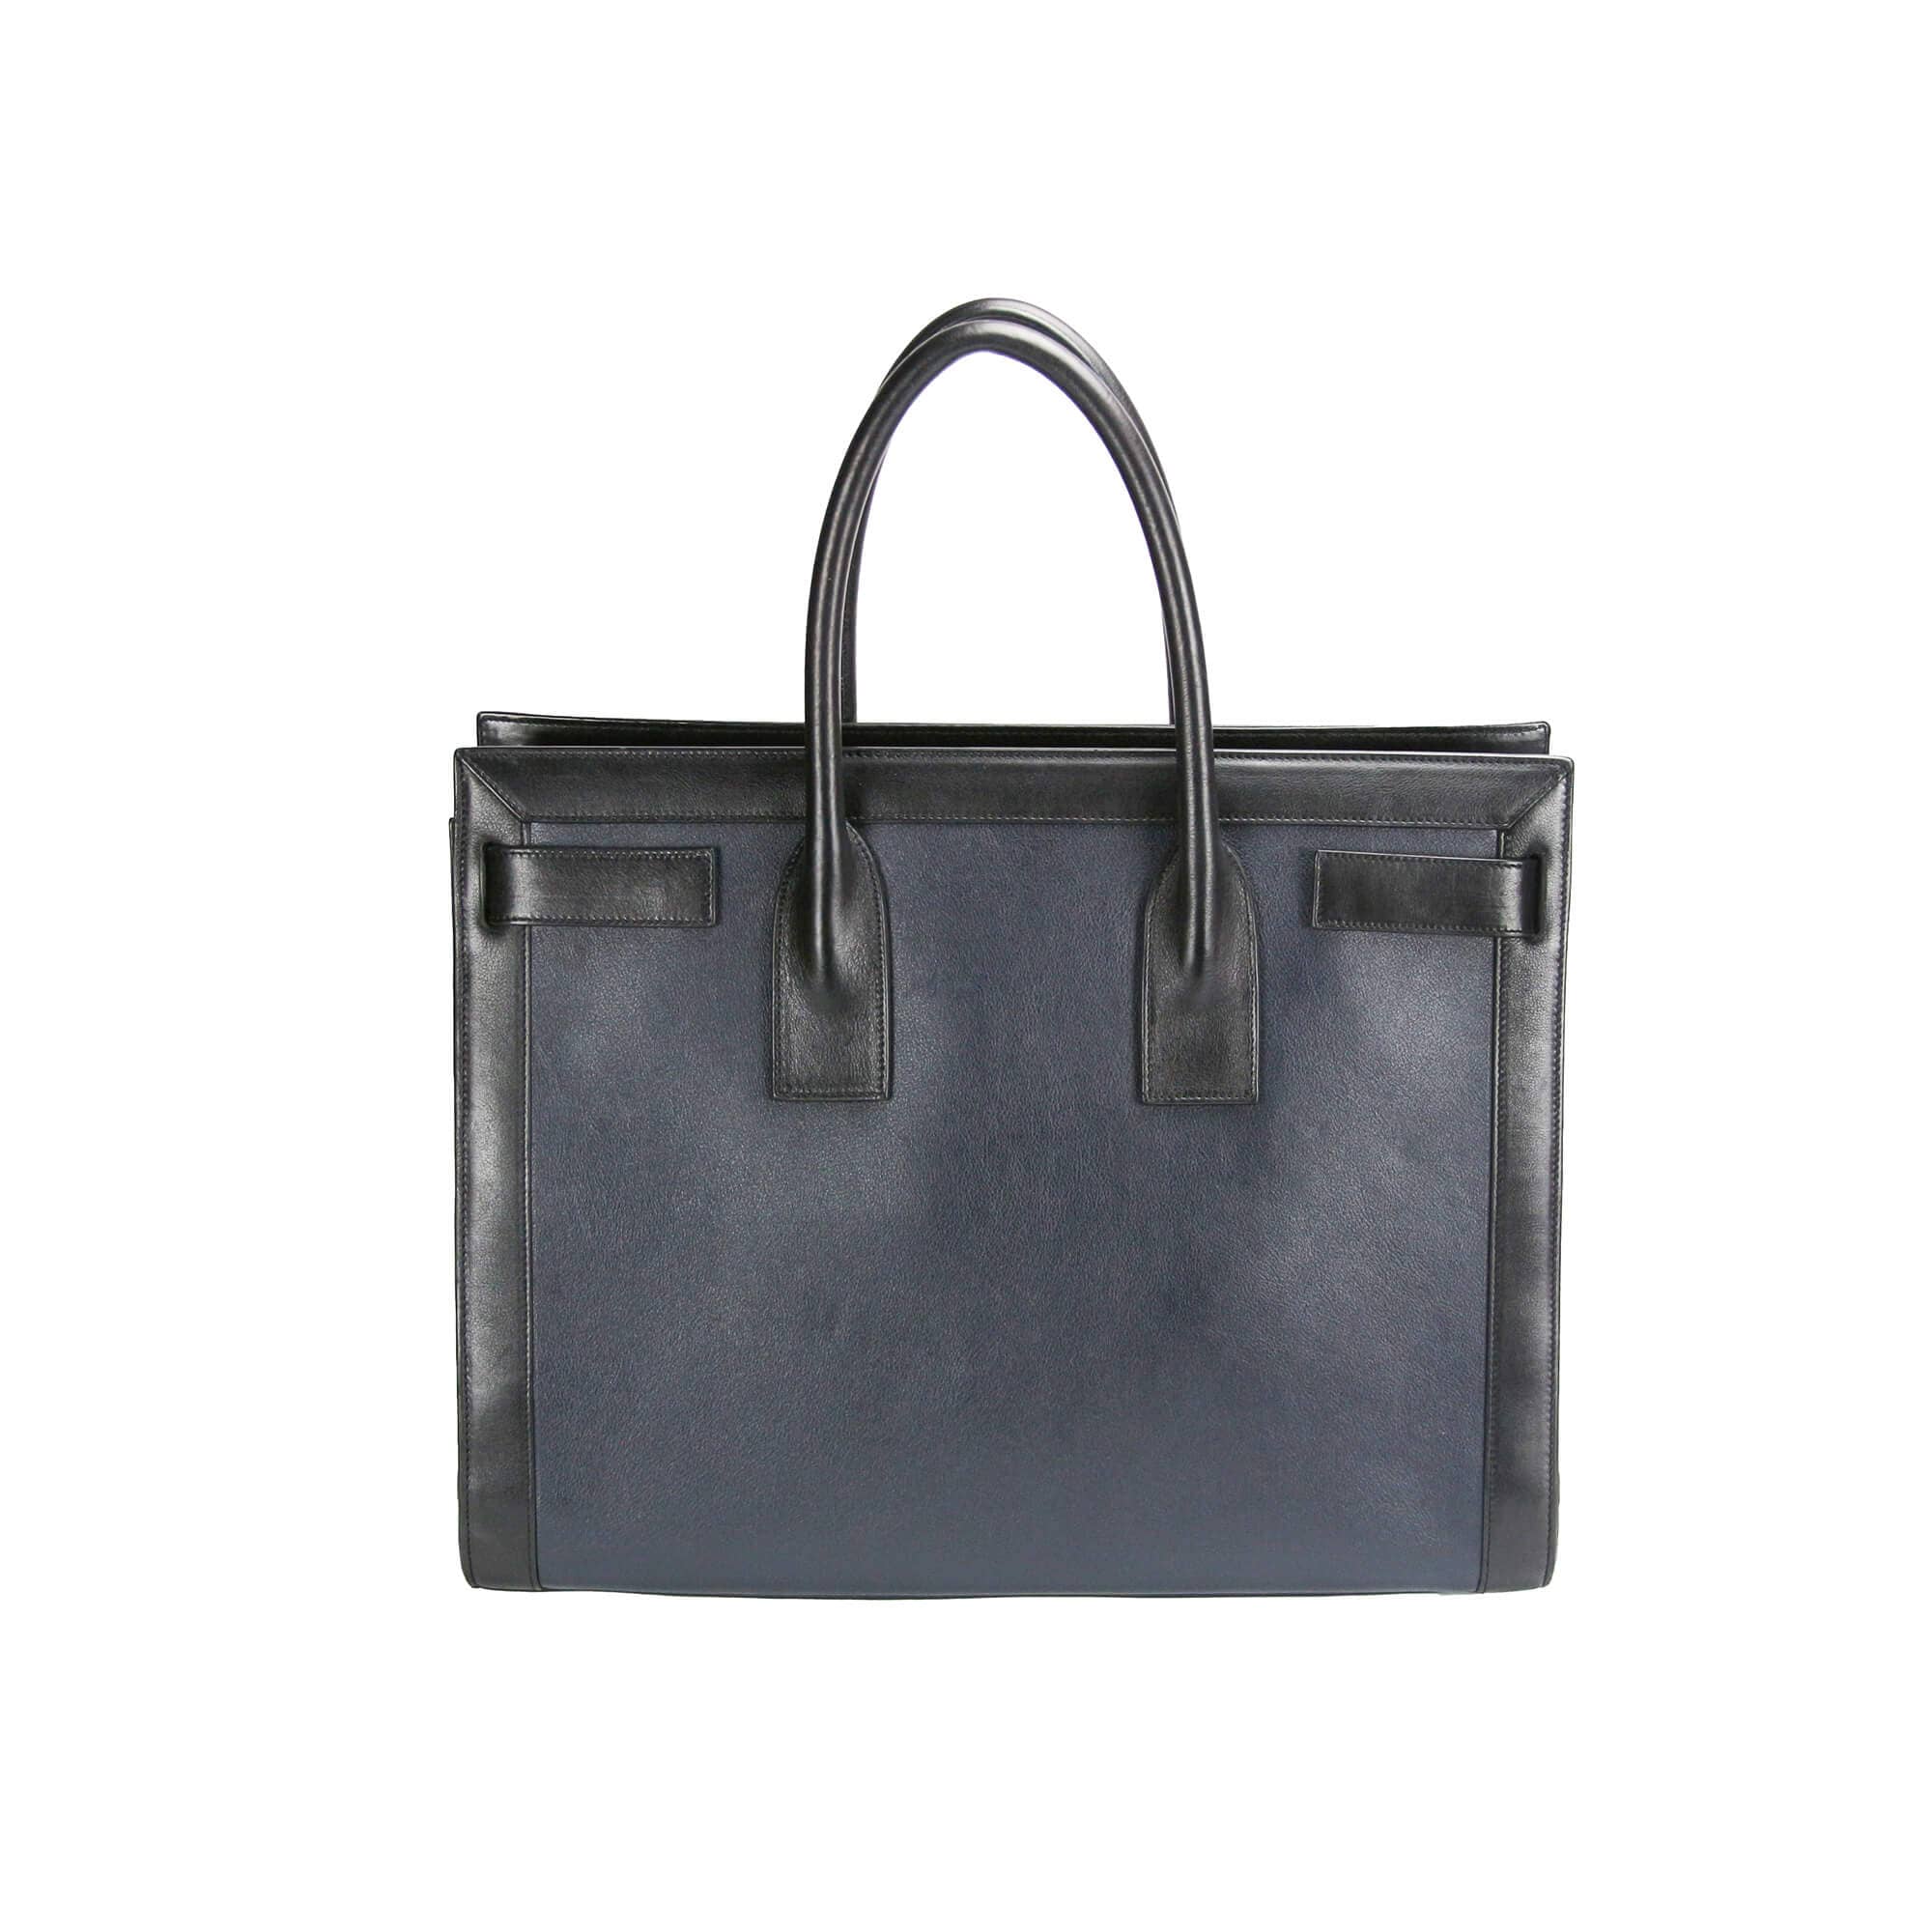 Yves Saint Laurent Sac De Jour Large Black and Blue Leather - Secondhandbags AG